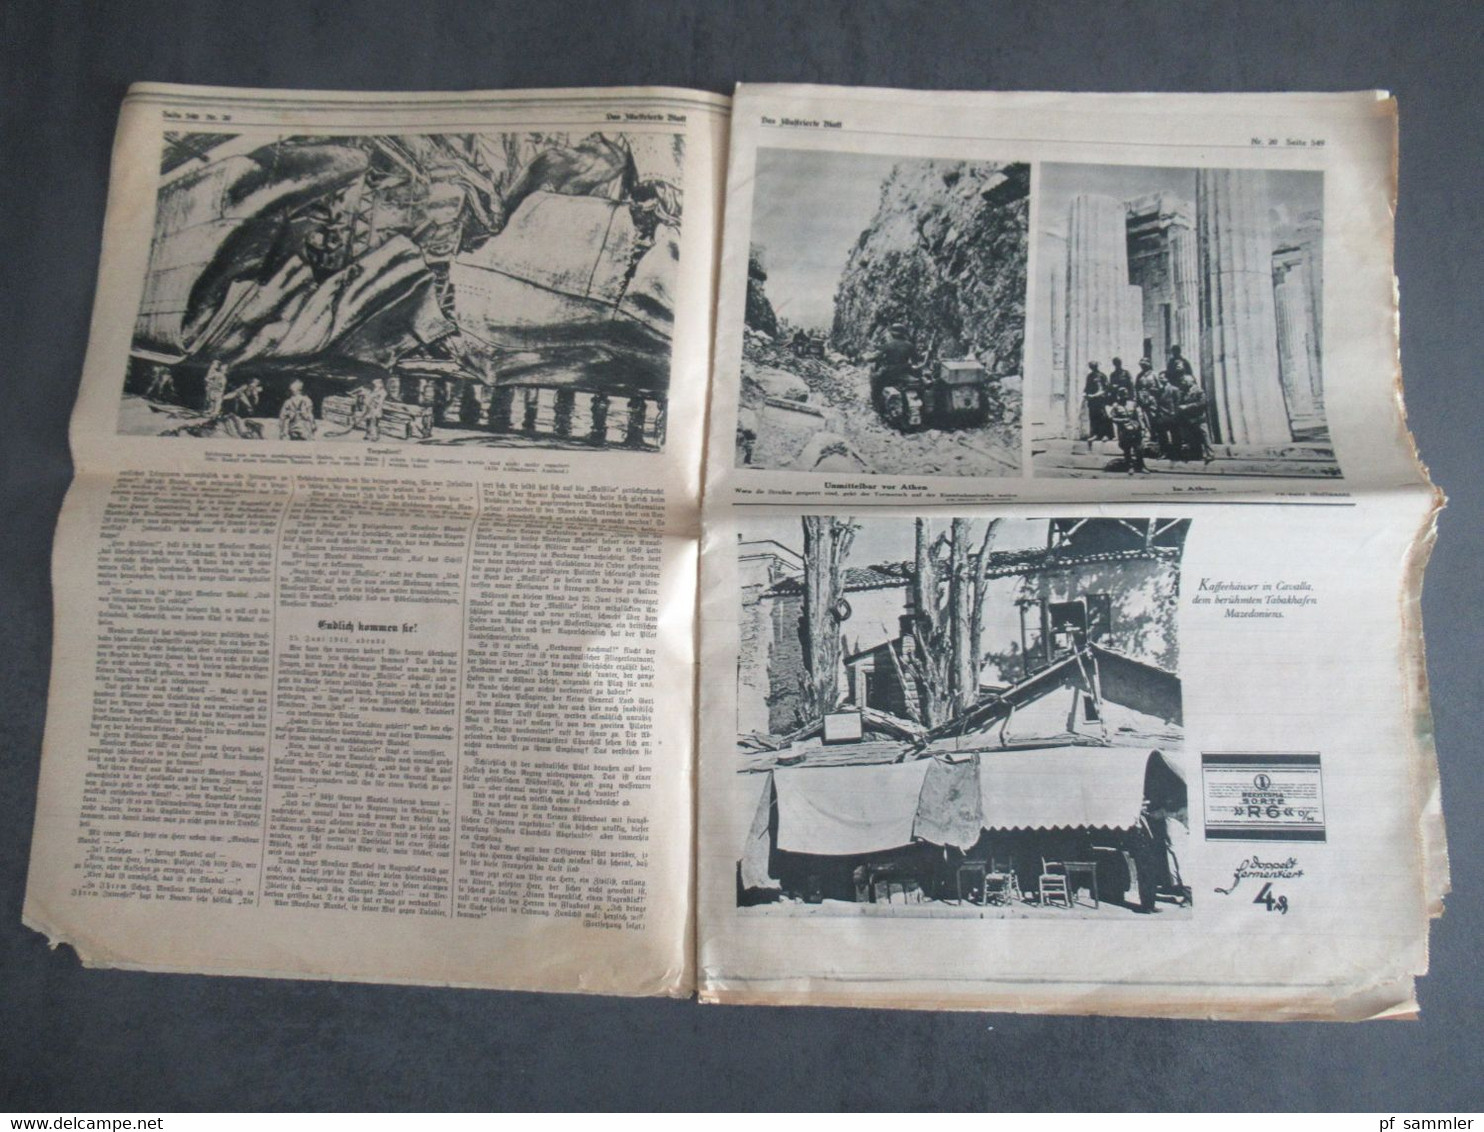 Zeitung im 2. WK vom 17.5.1941 Das Illustrierte Blatt / Frankfurter Illustrierte / Kriegspropaganda